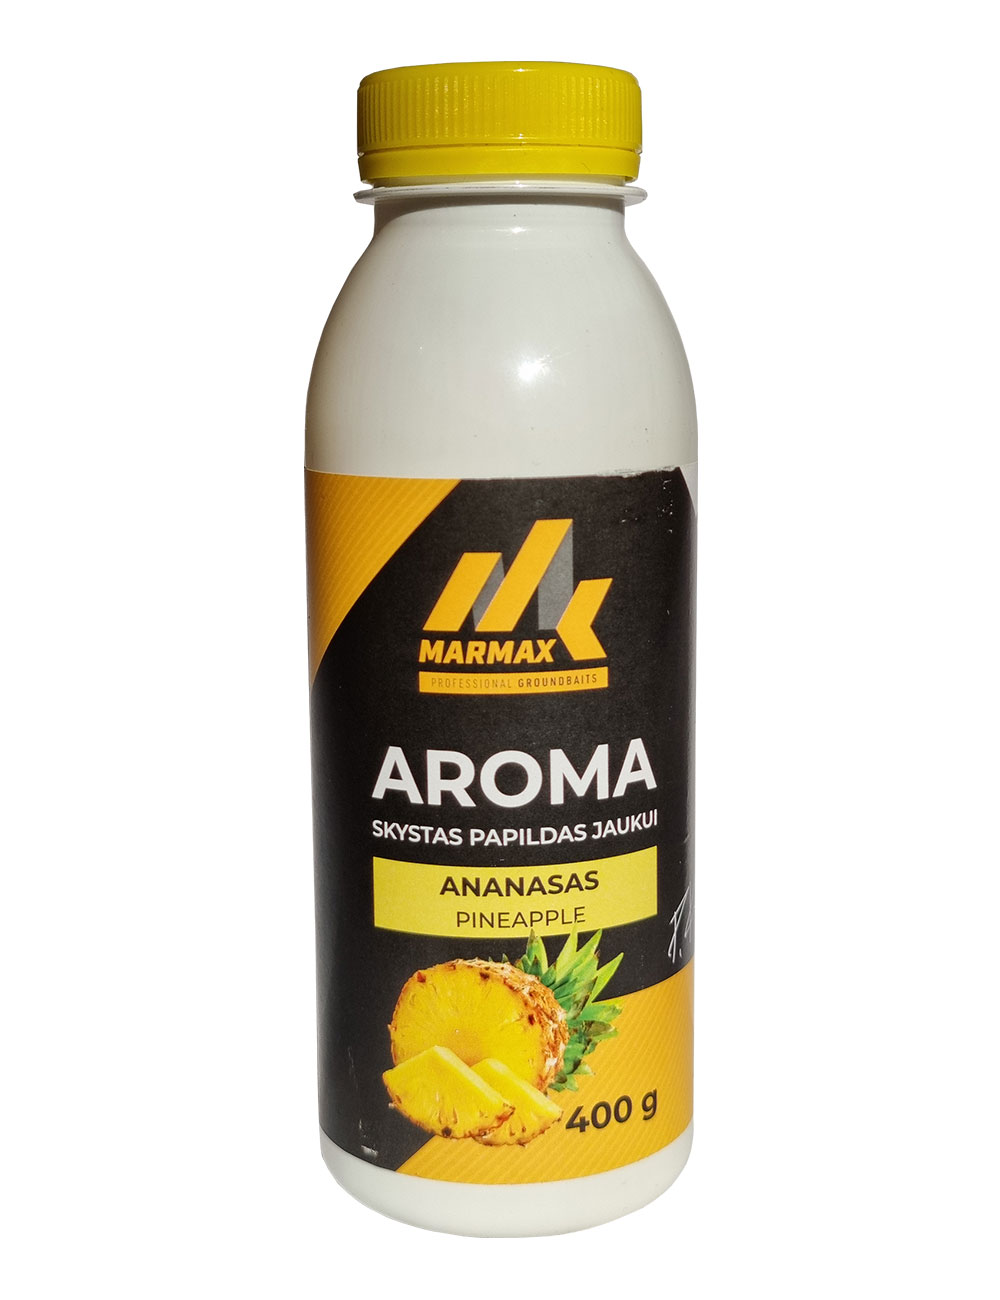 Aroma - Ananasas